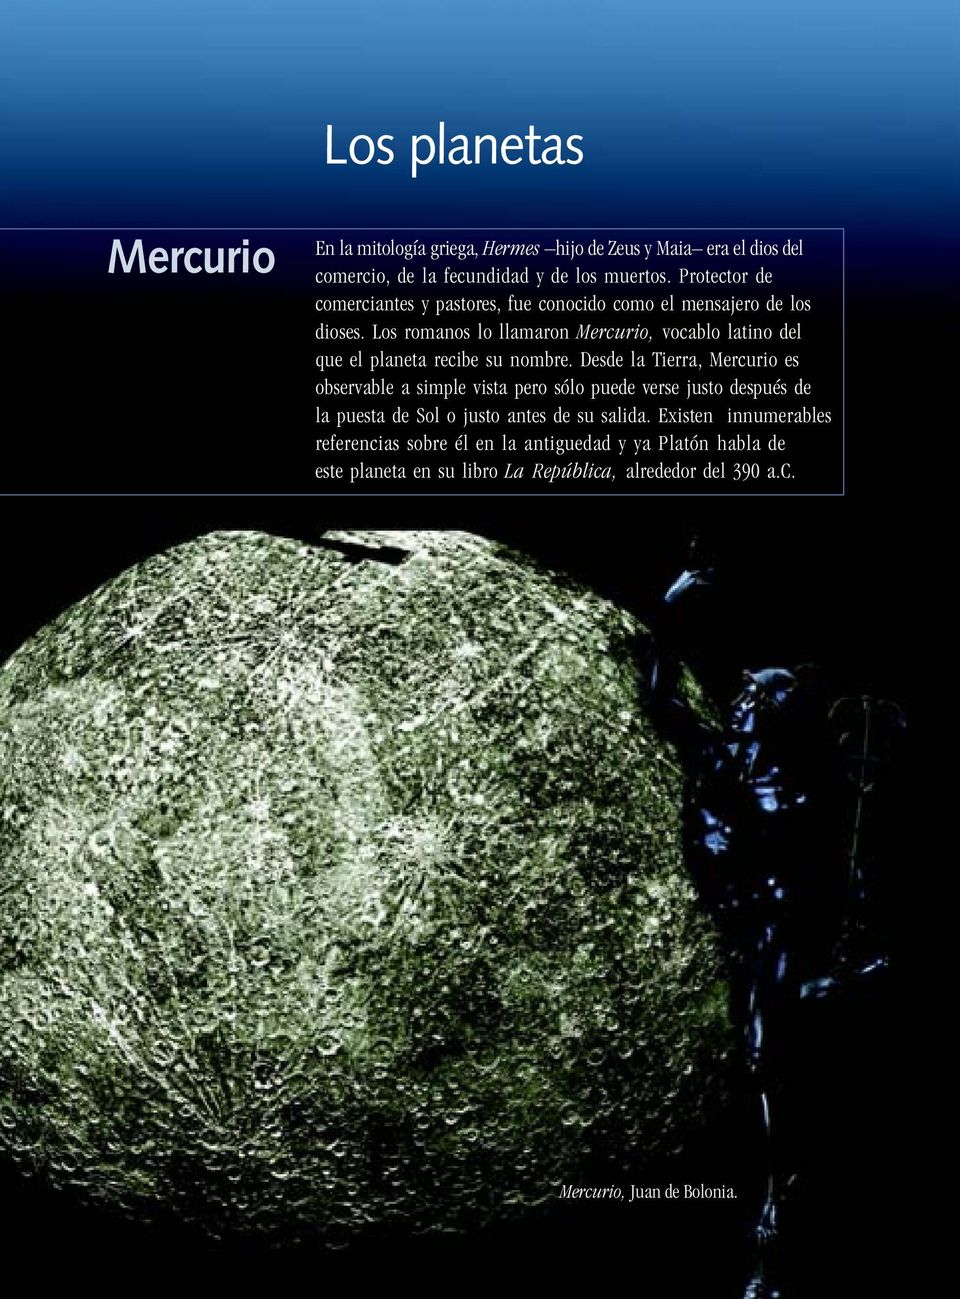 Los romanos lo llamaron Mercurio, vocablo latino del que el planeta recibe su nombre.